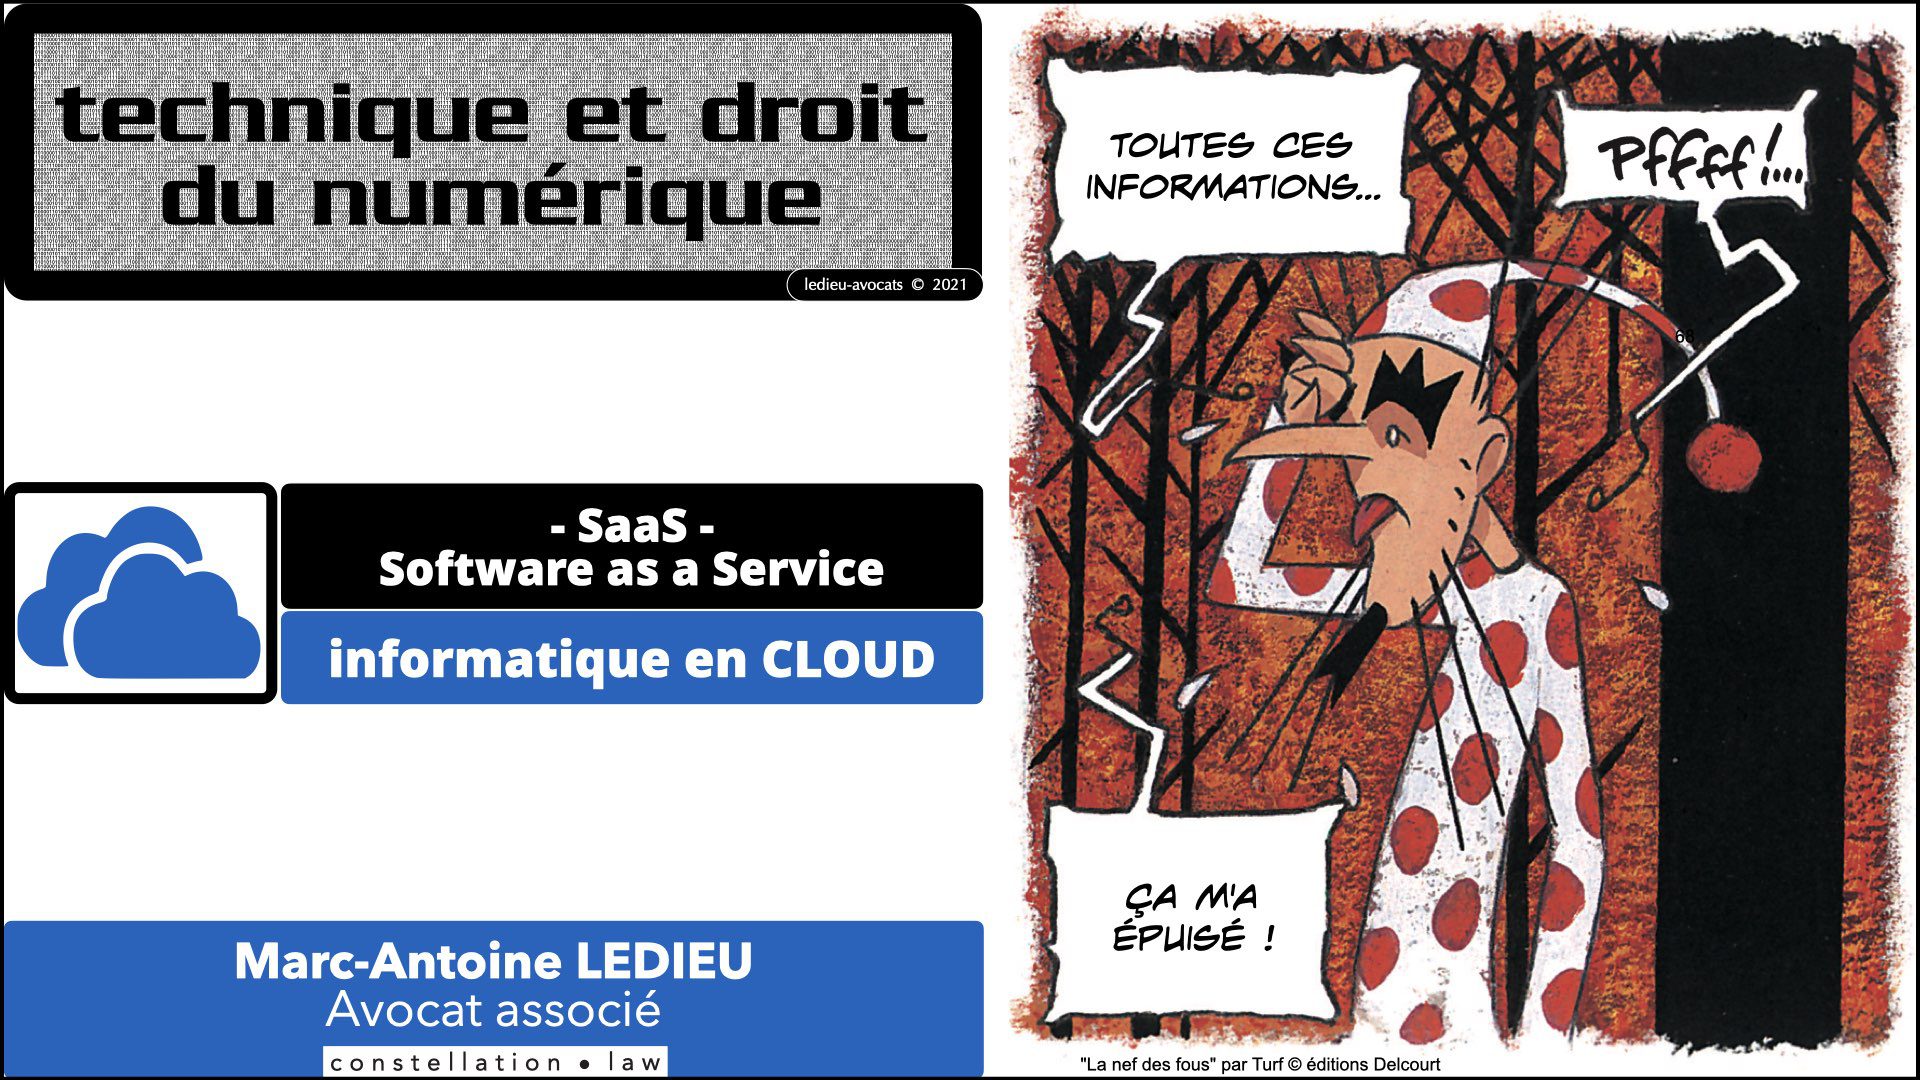 343 service LOGICIEL SaaS Software-as-a-Service cloud computing © Ledieu-Avocats technique droit numerique 30-08-2021.068